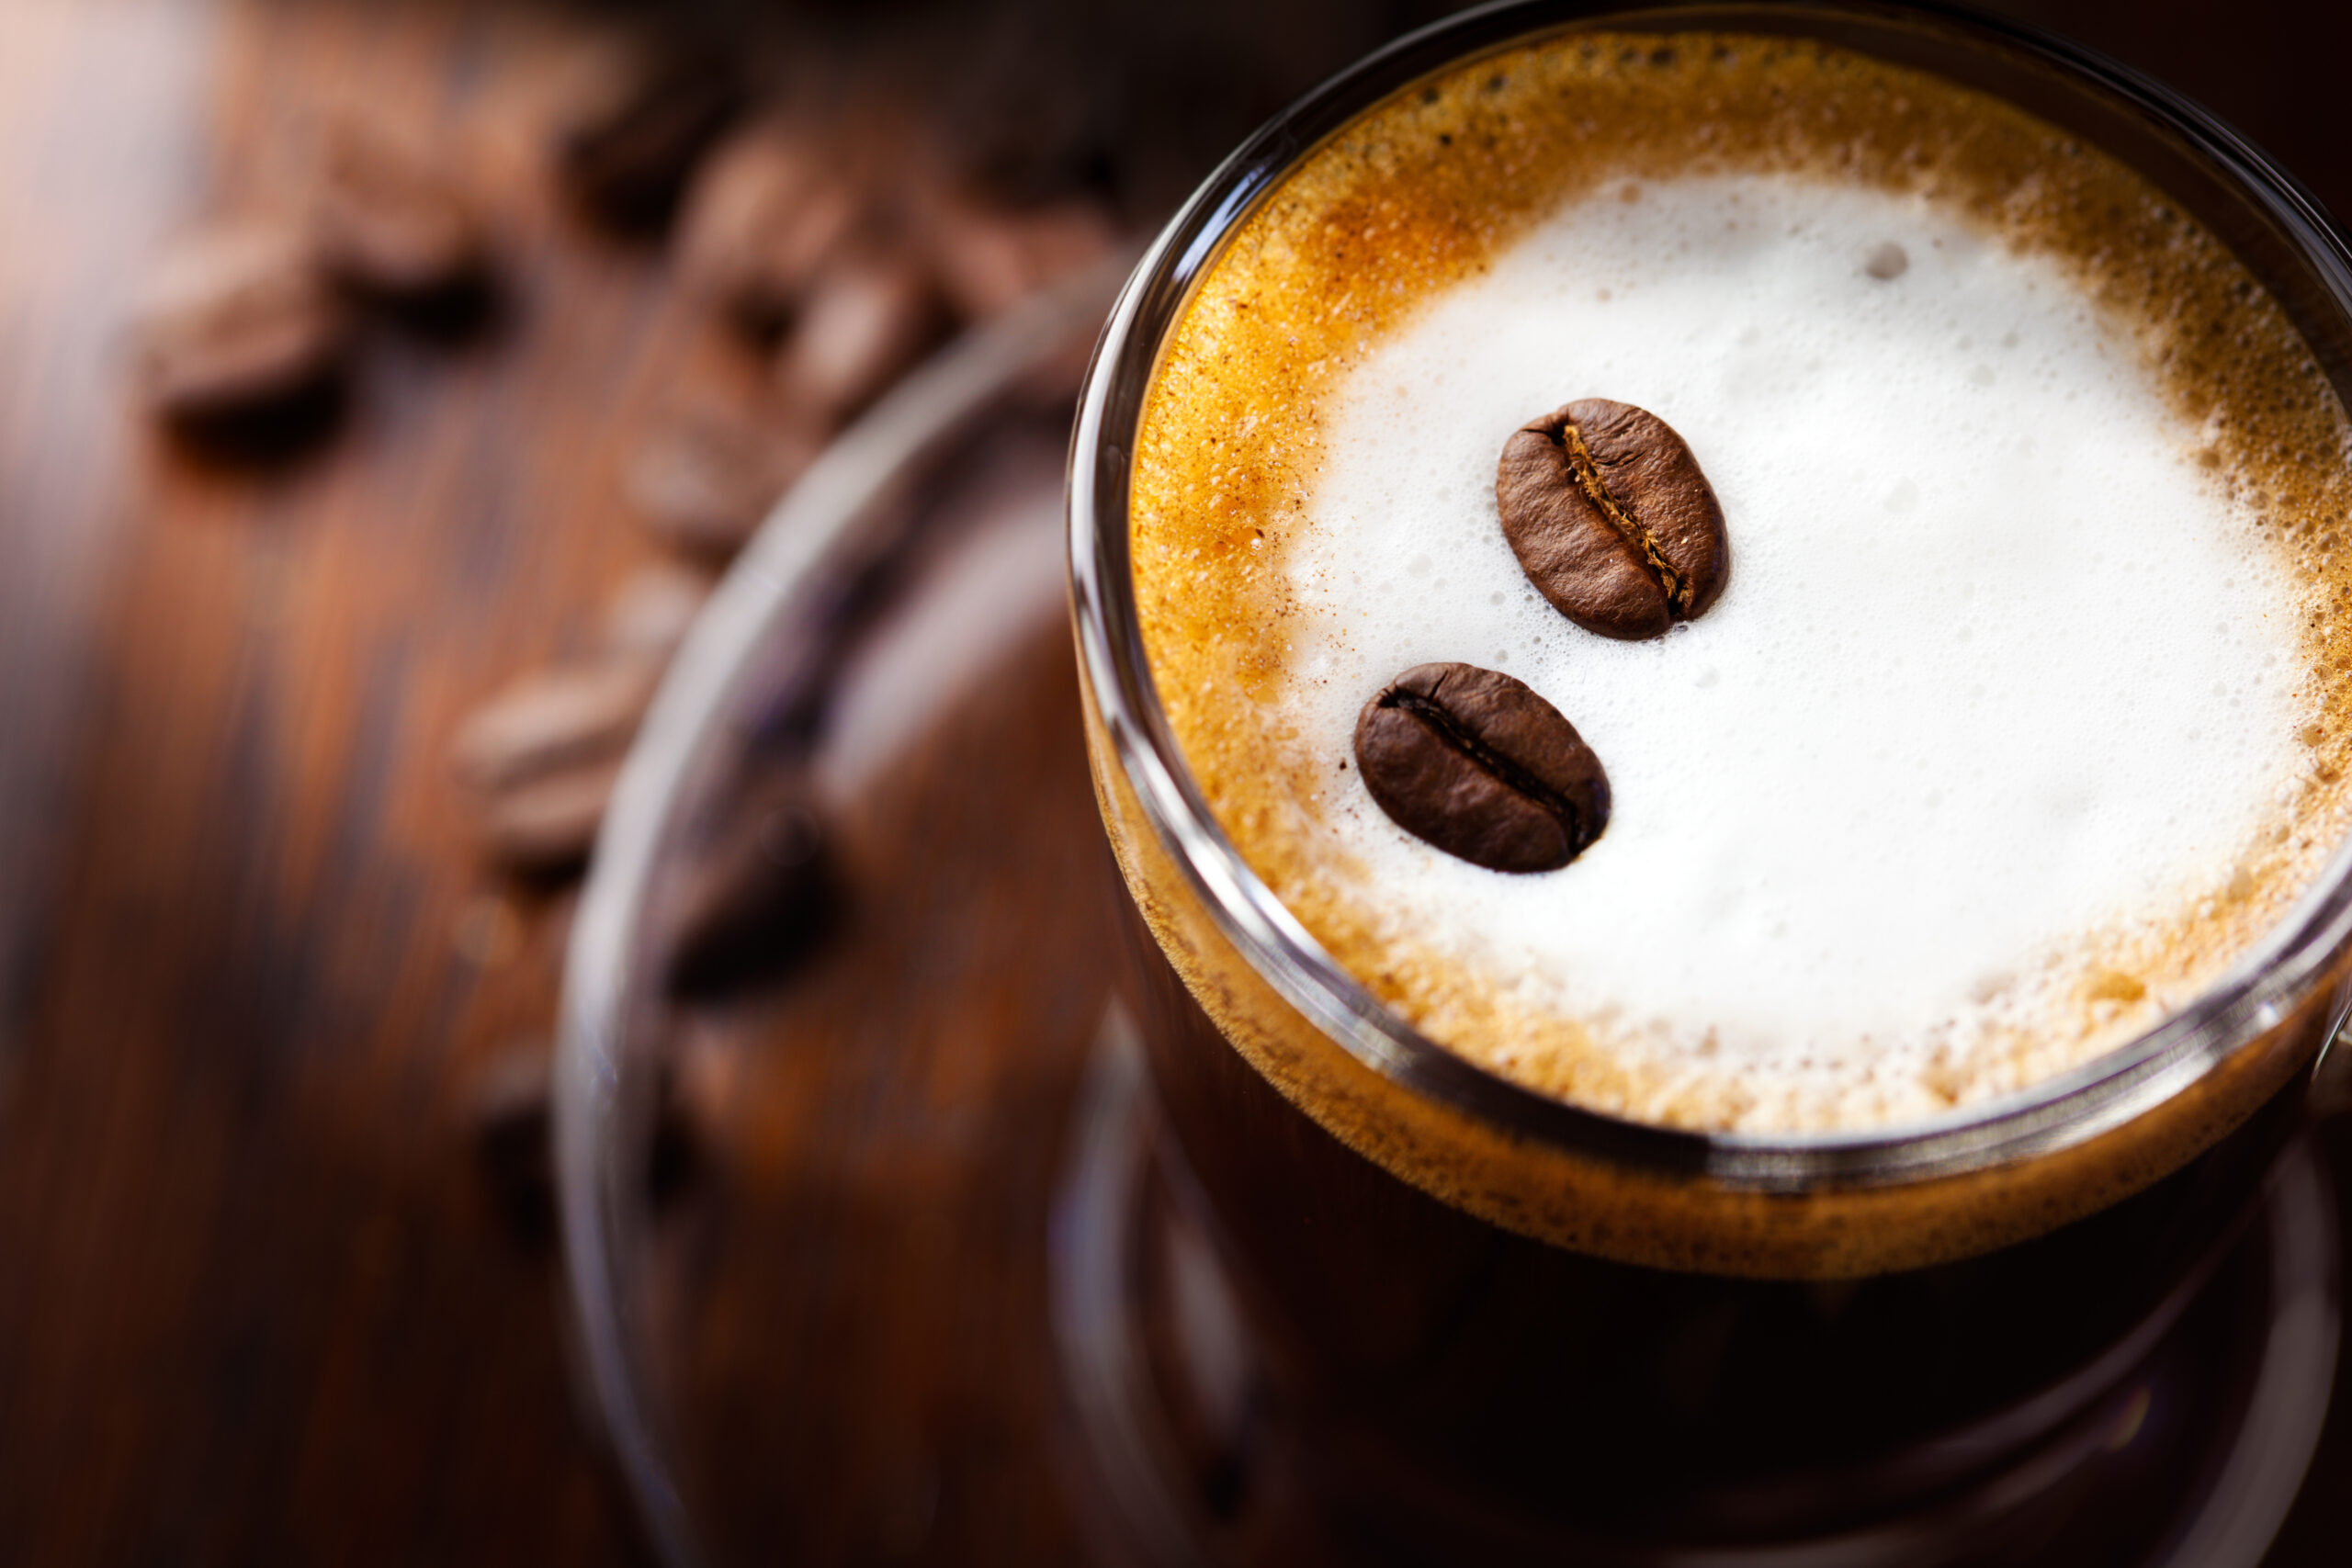 Che tipo di caffè scegli? Denota importanti lati della tua personalità